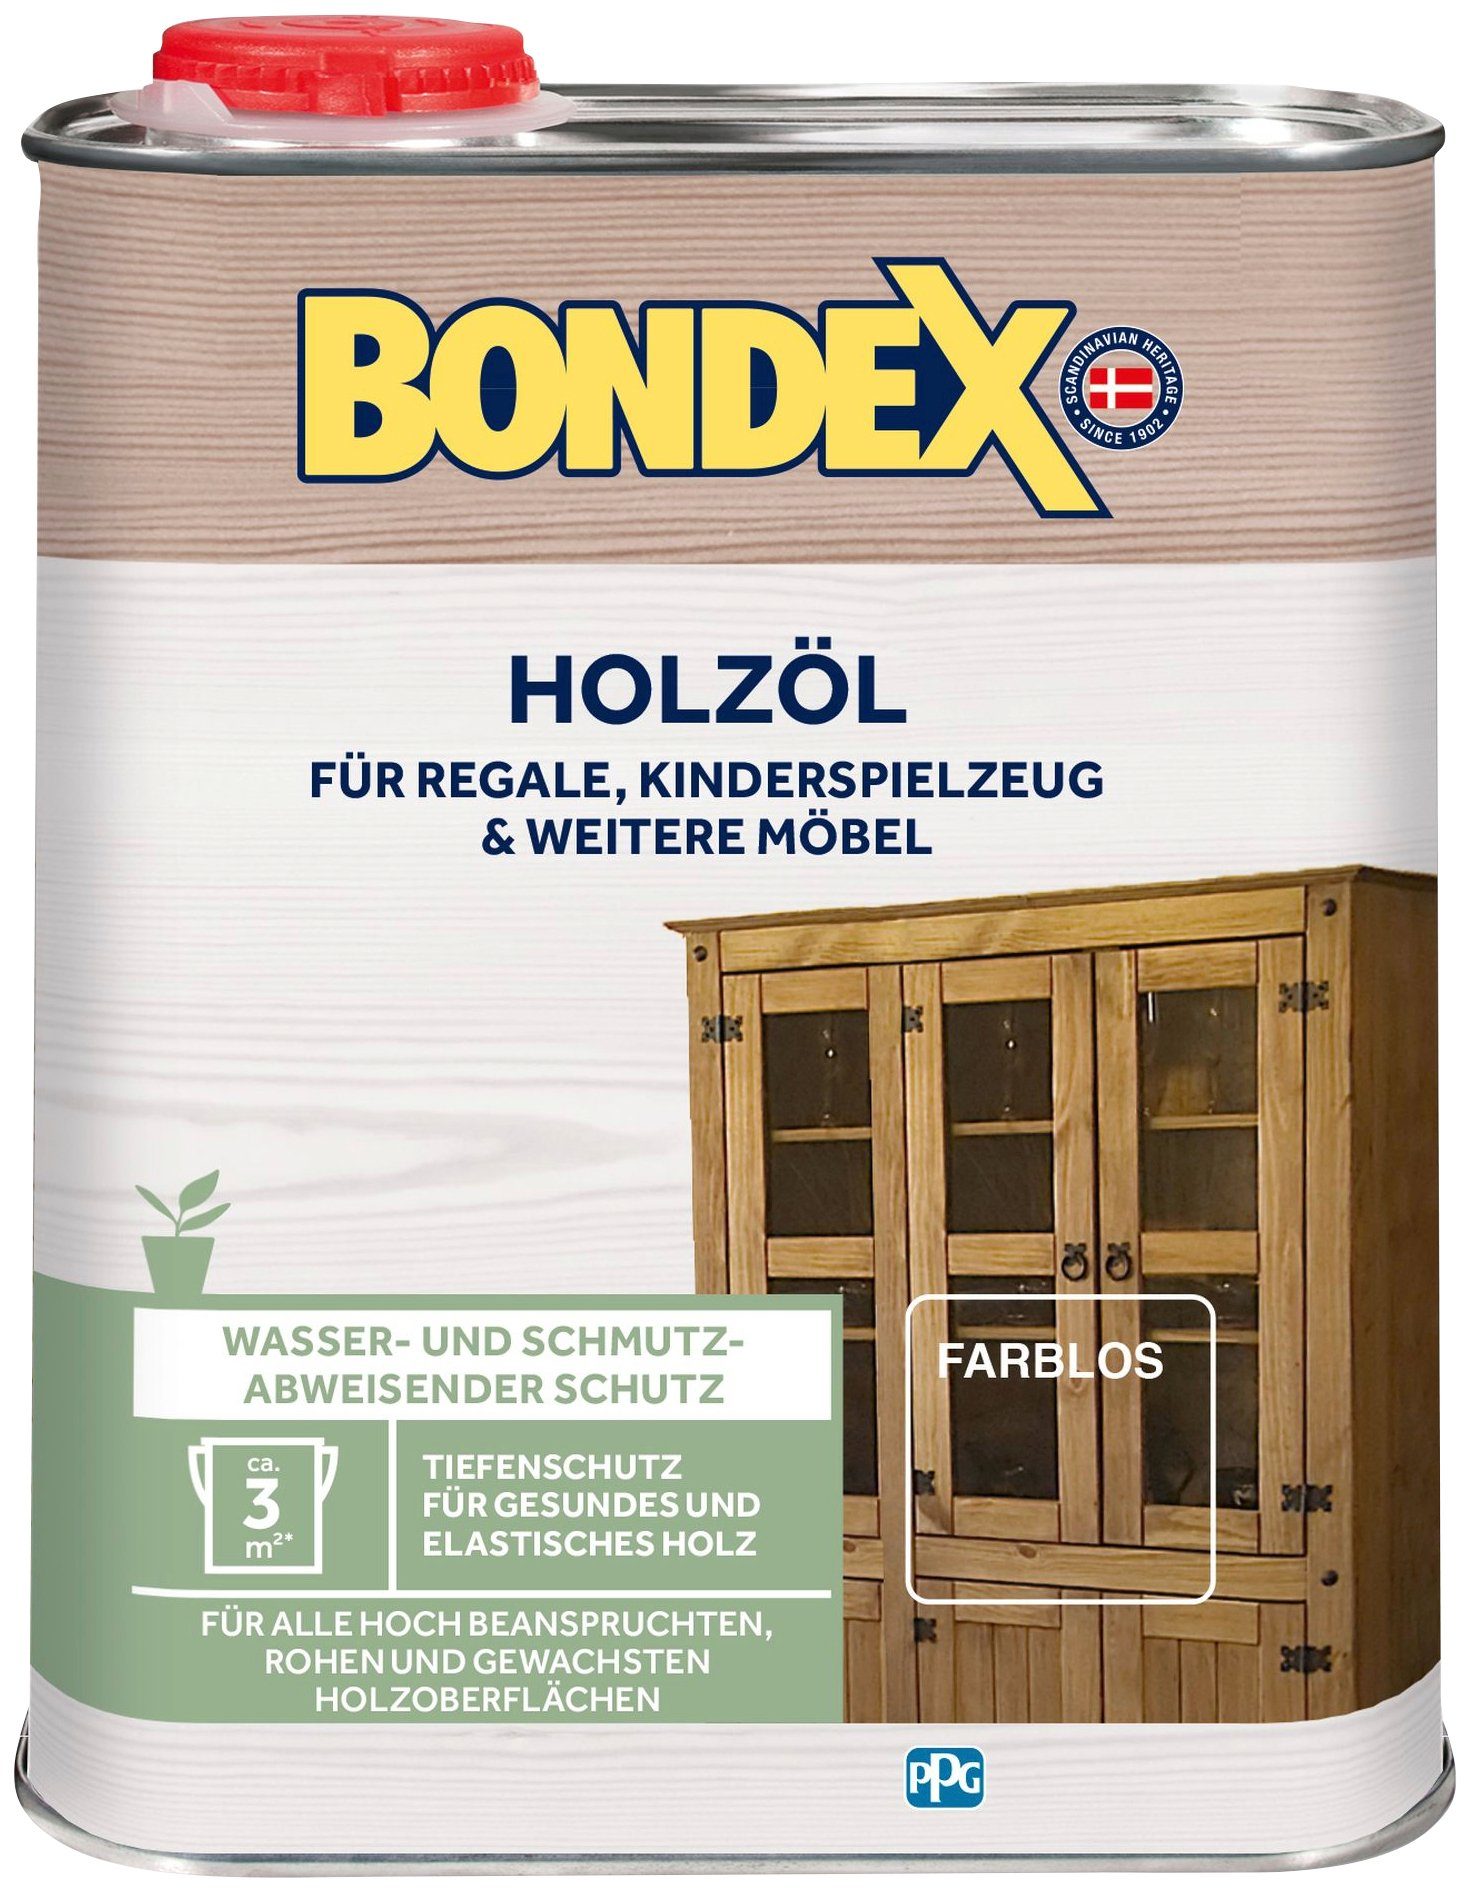 Bondex Holzöl HOLZÖL, Farblos, 0,25 Liter Inhalt natur